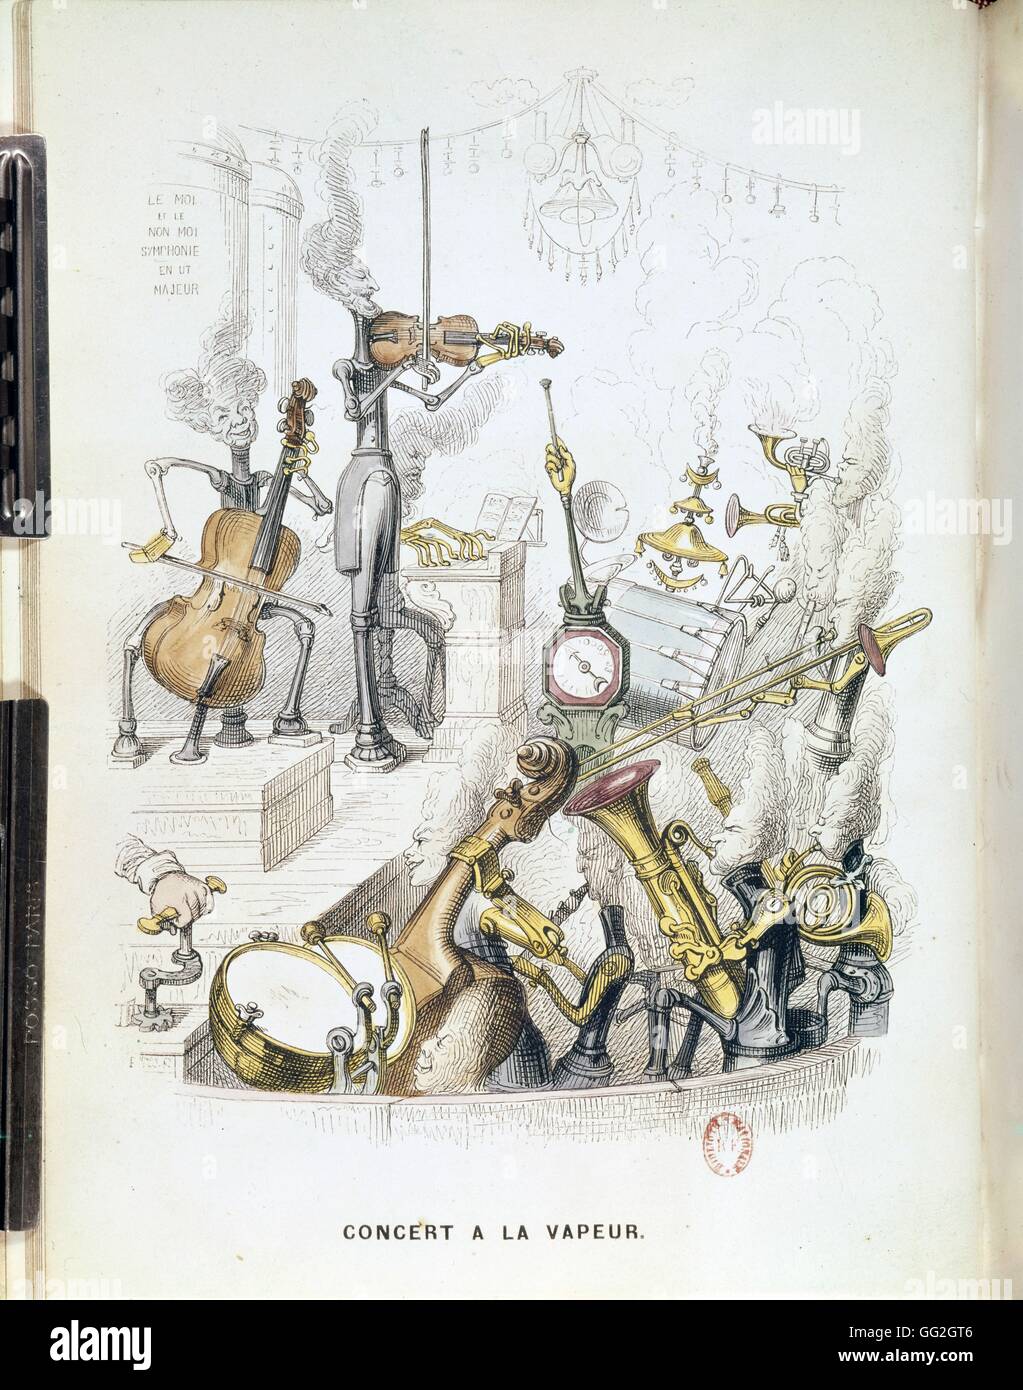 Jean-Jacques Grandville scuola francese di Steam concerto : interpretariato 'Le moi et le non-moi", symphonie en ut majeur. Xix secolo litografia Foto Stock